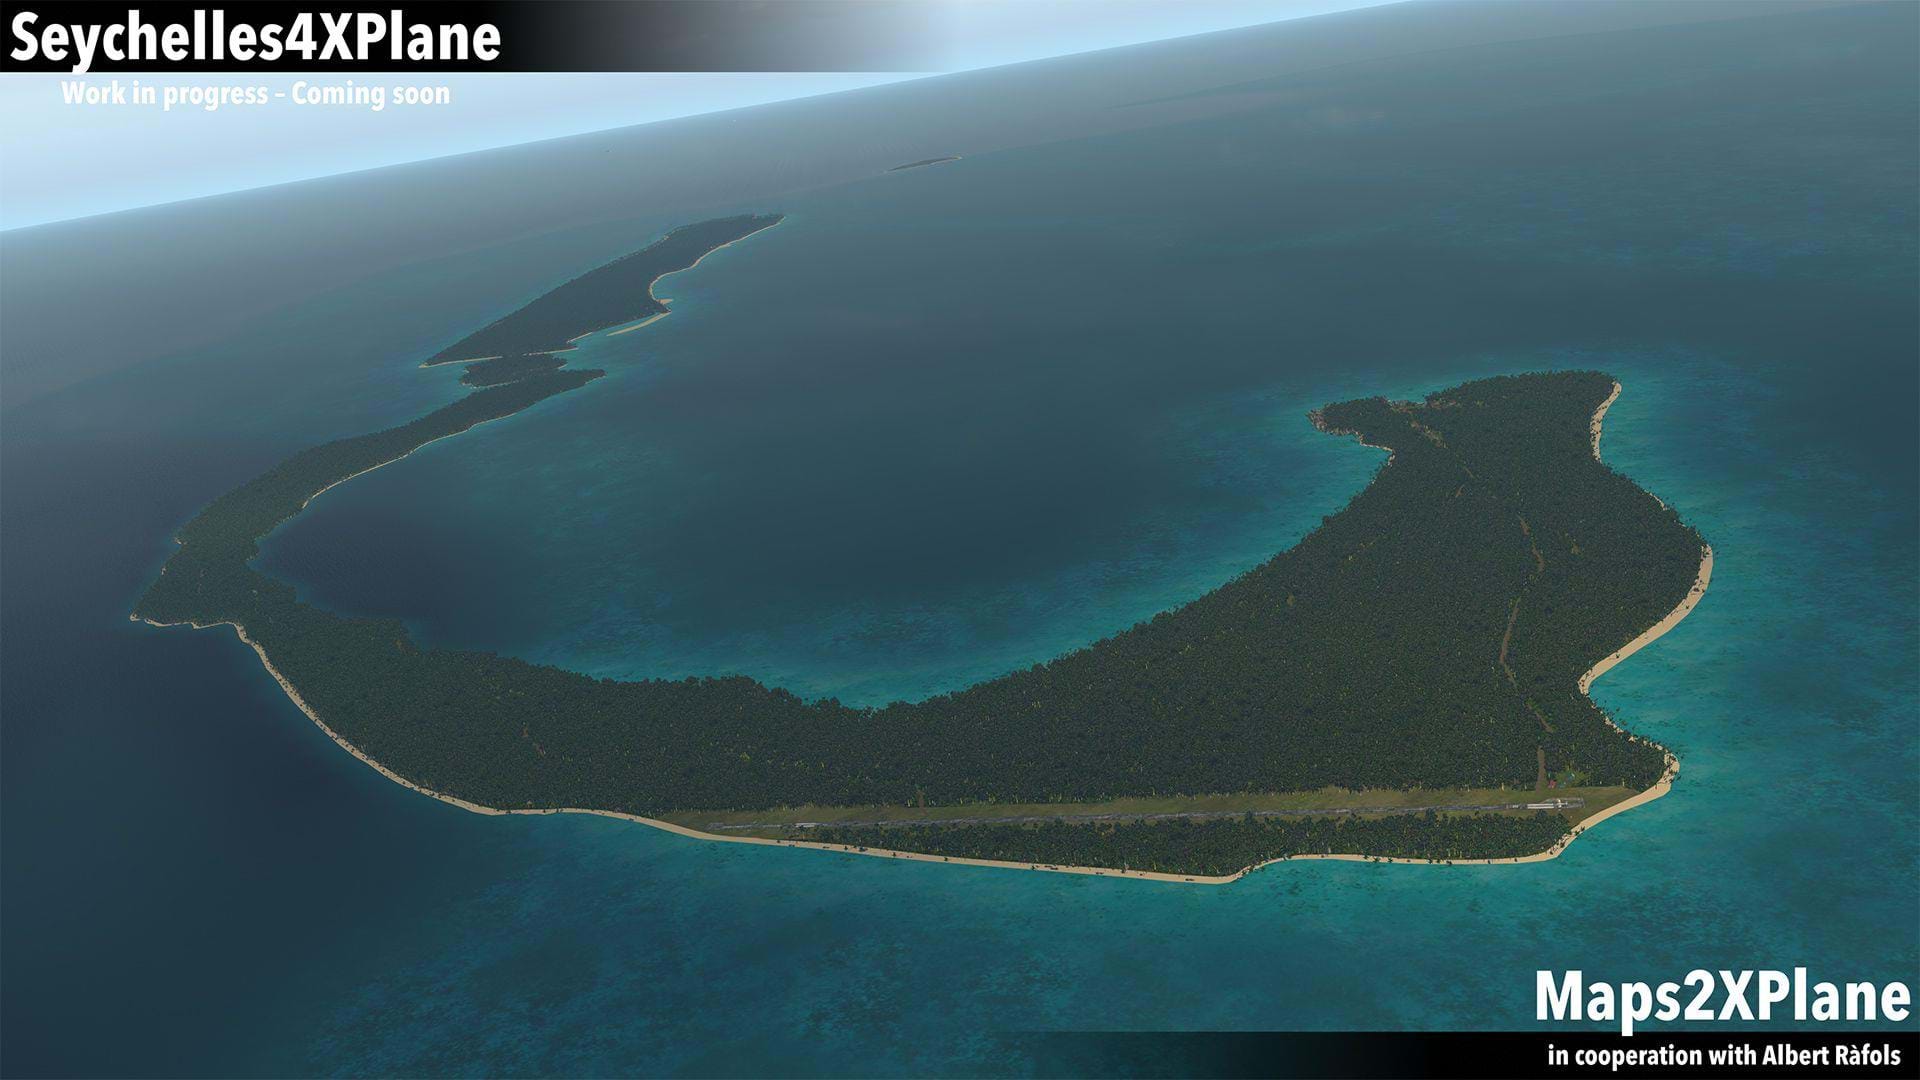 Maps2XPlane - Seychelles4XPlane